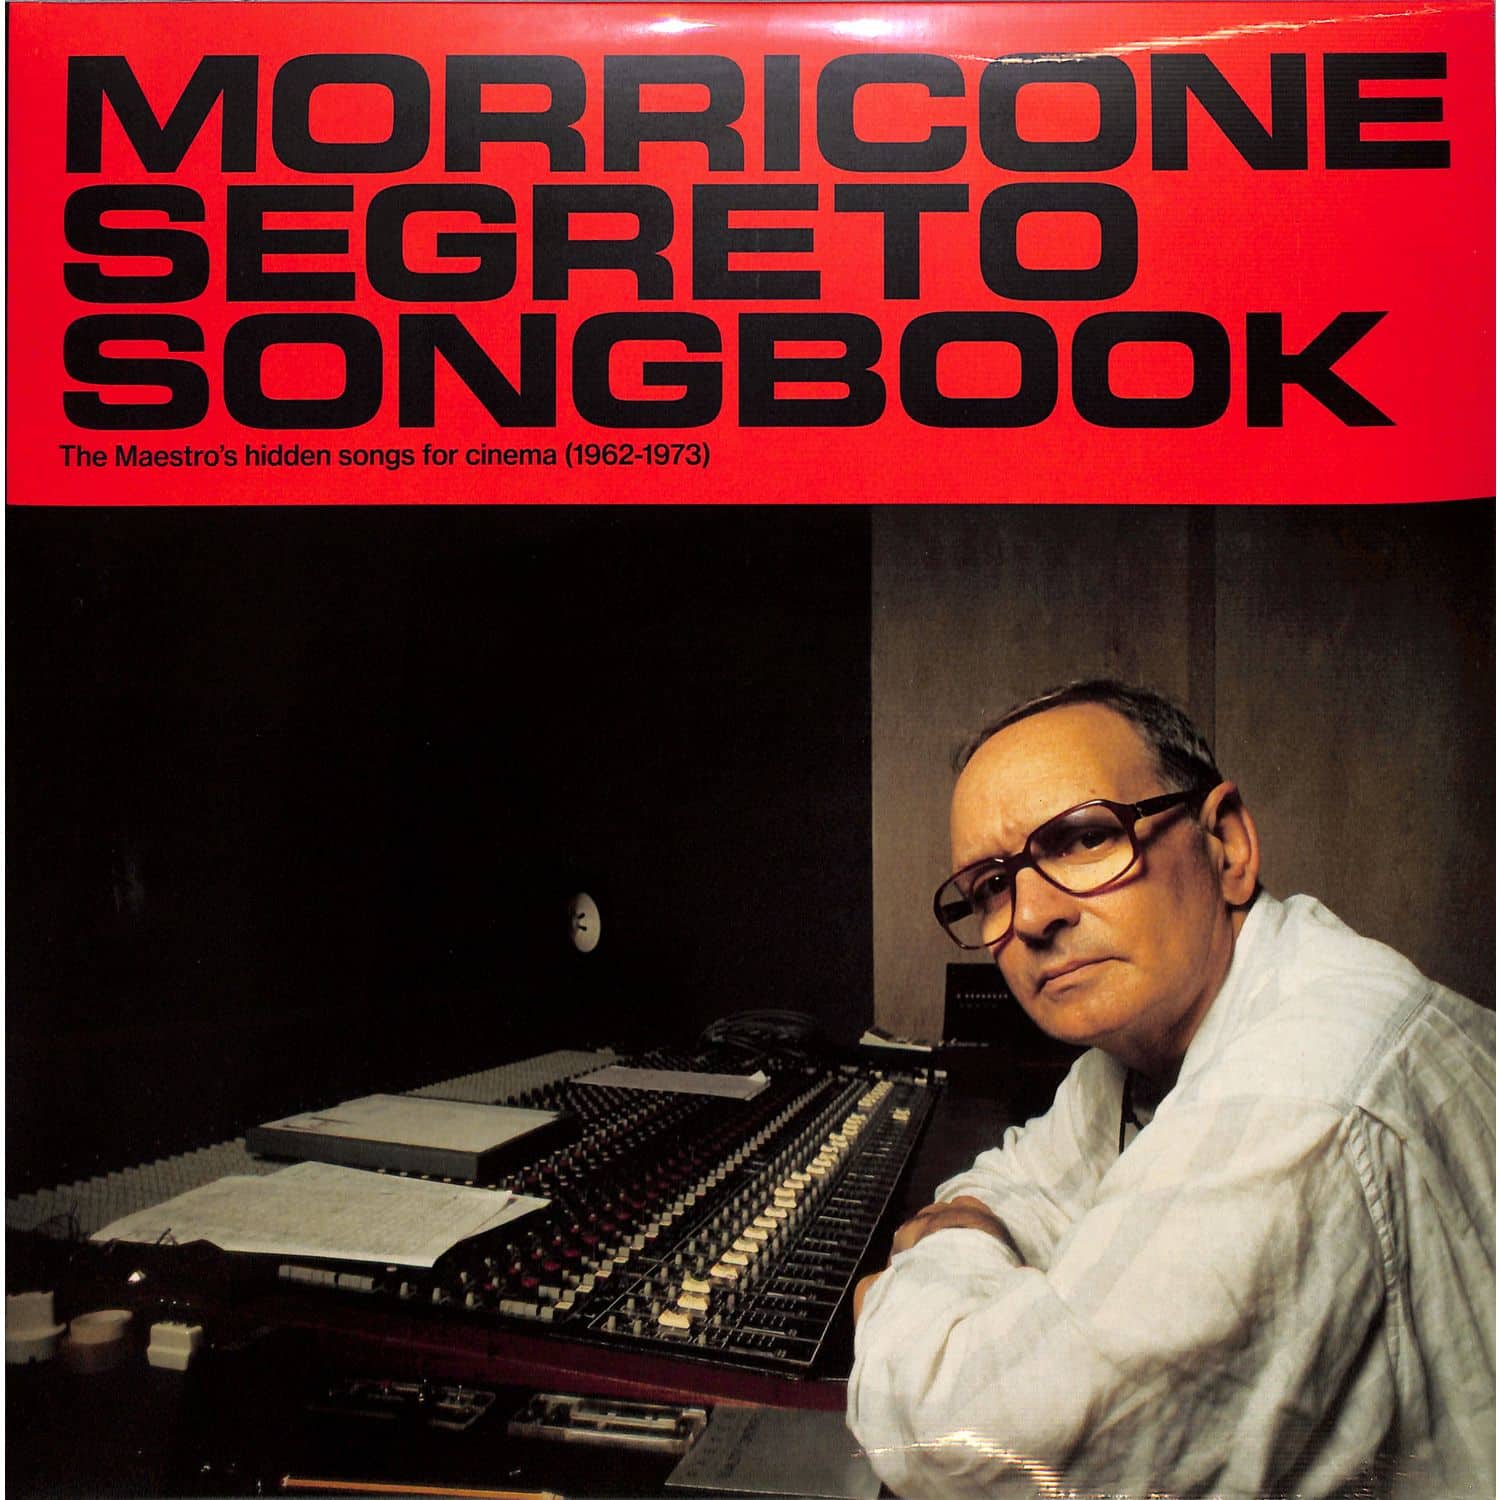 Ennio Morricone - MORRICONE SEGRETO SONGBOOK 